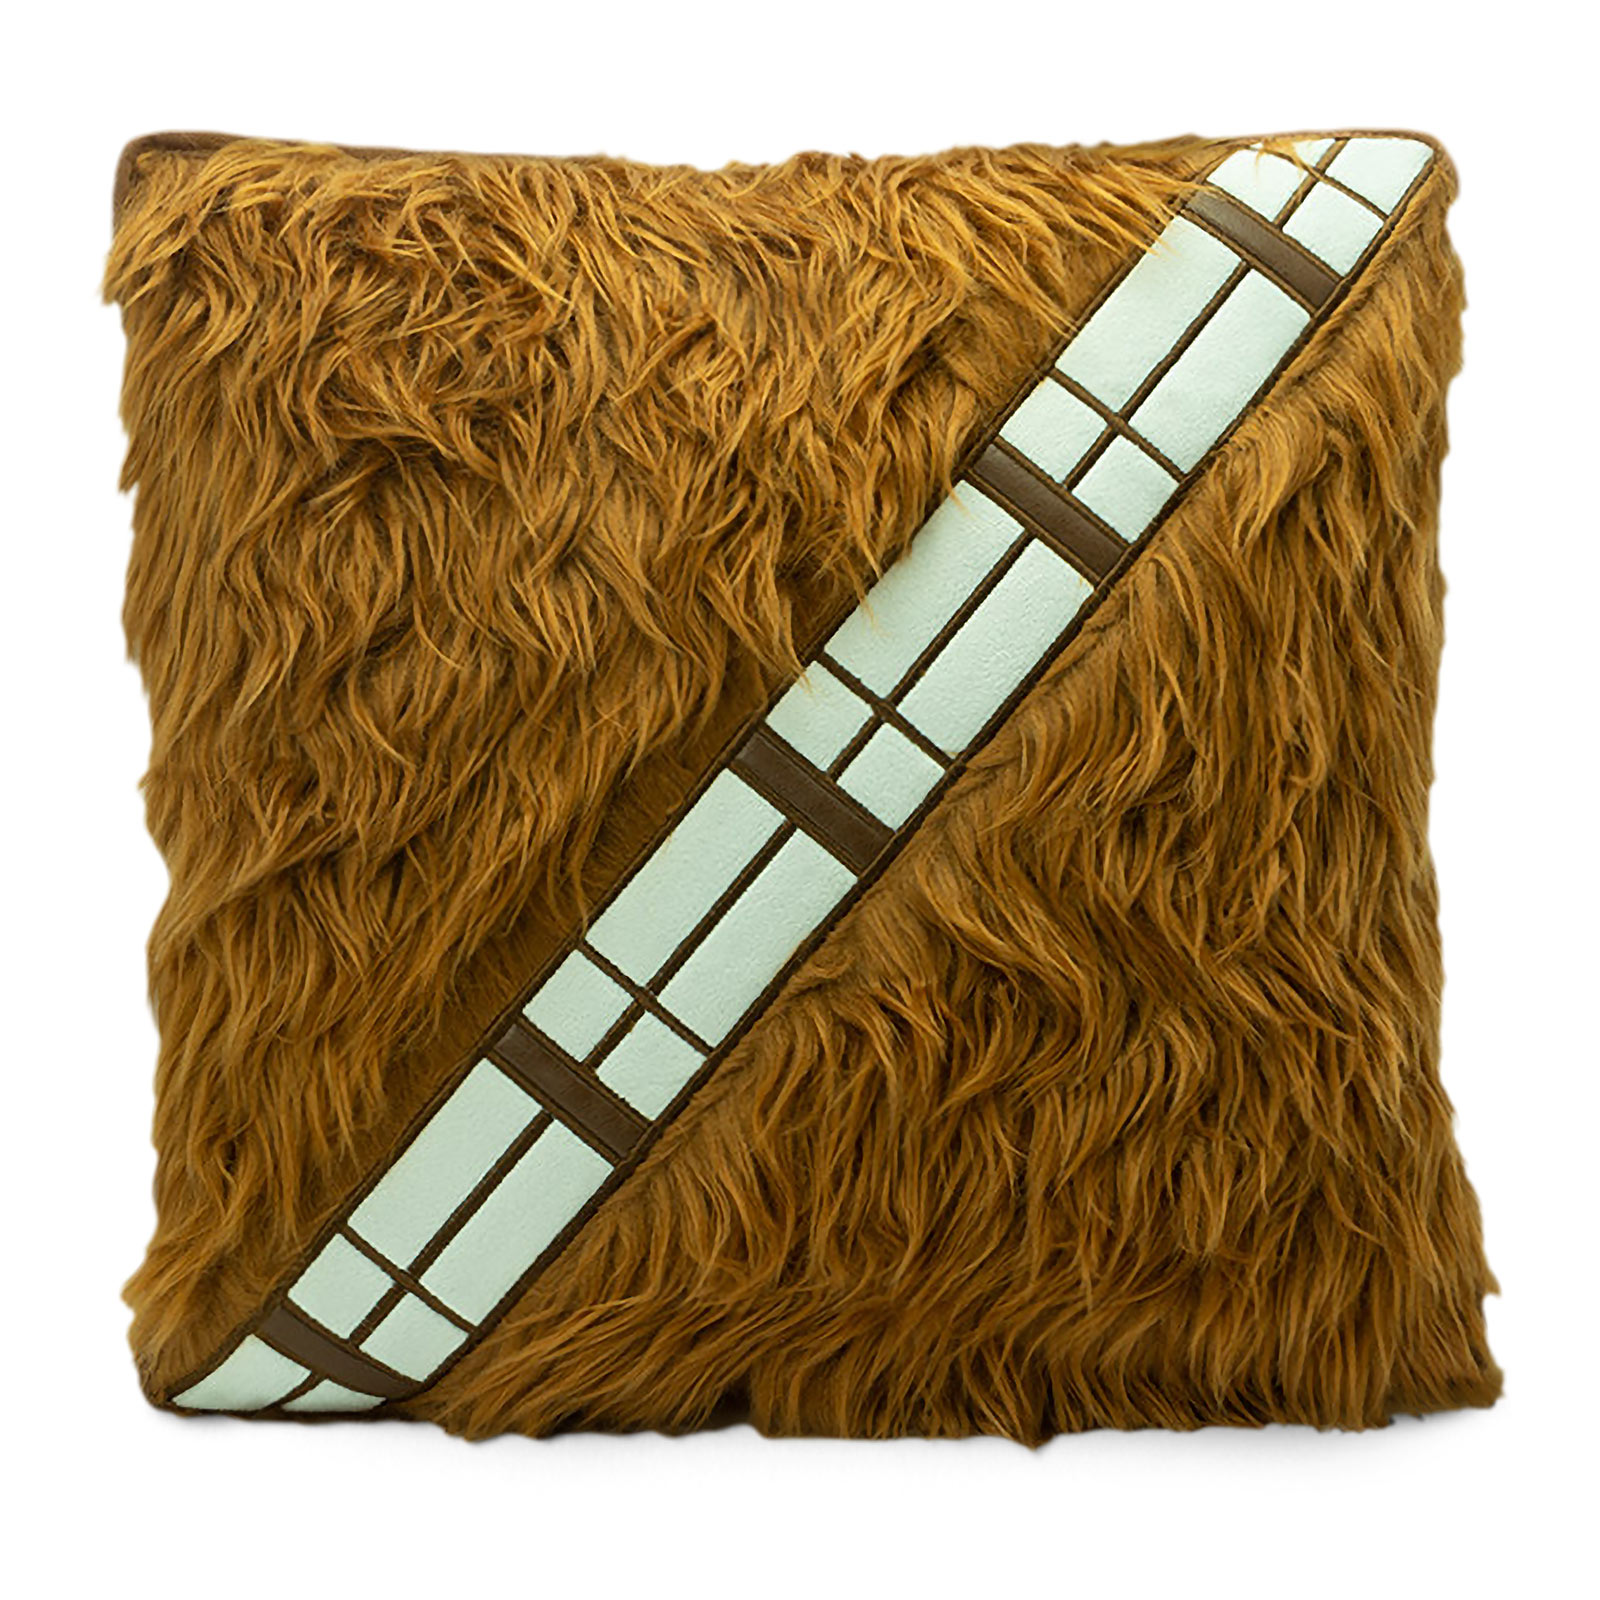 Star Wars - Chewbacca cartouchière oreiller